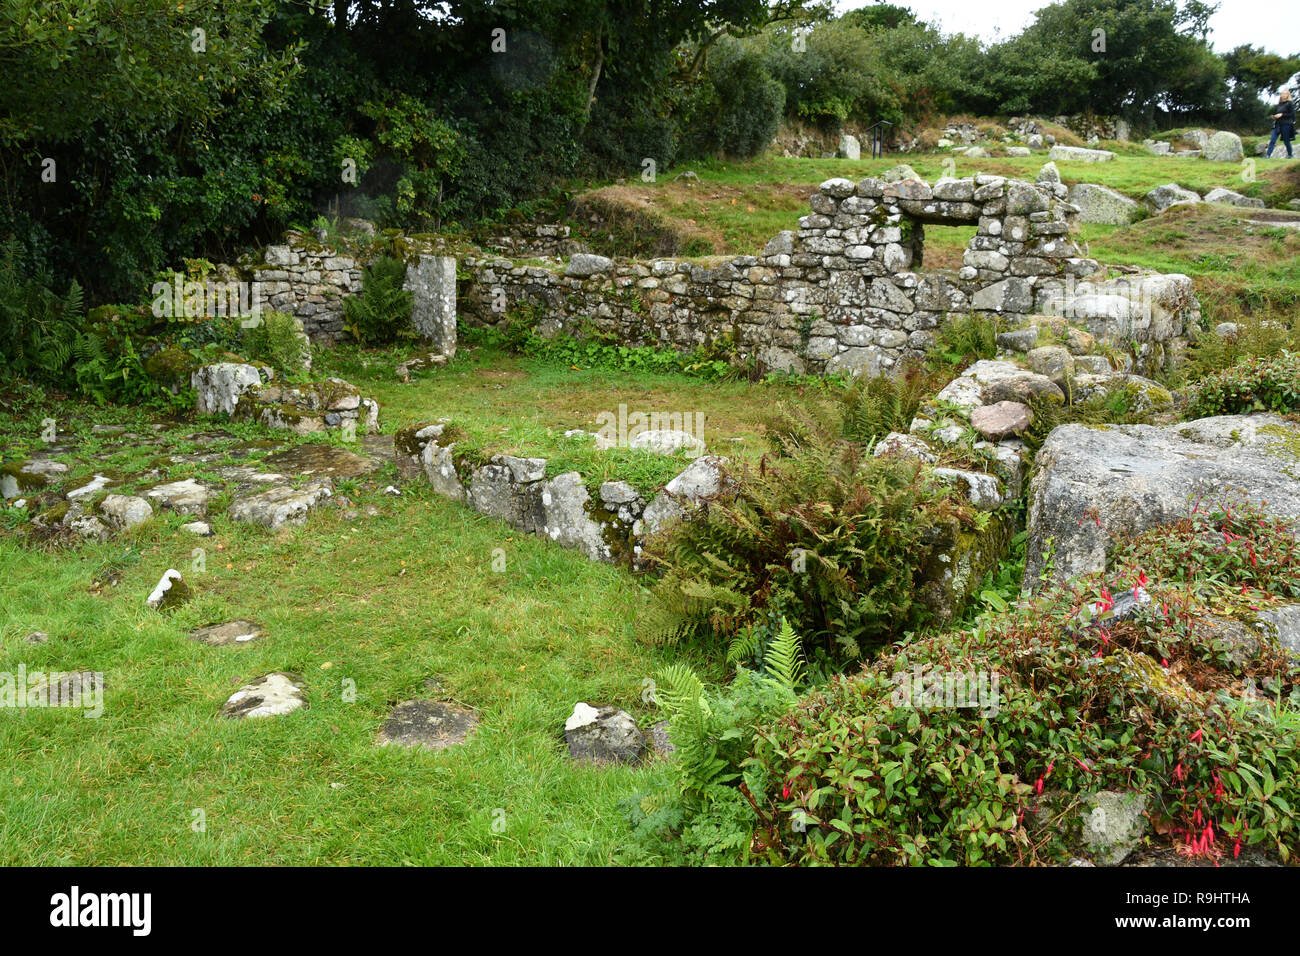 Carn Euny. Eisenzeit altes Dorf im Südwesten Englands. Es wurde von der Eisenzeit bis zum Ende der römischen Besetzung Britanniens bewohnt Stockfoto